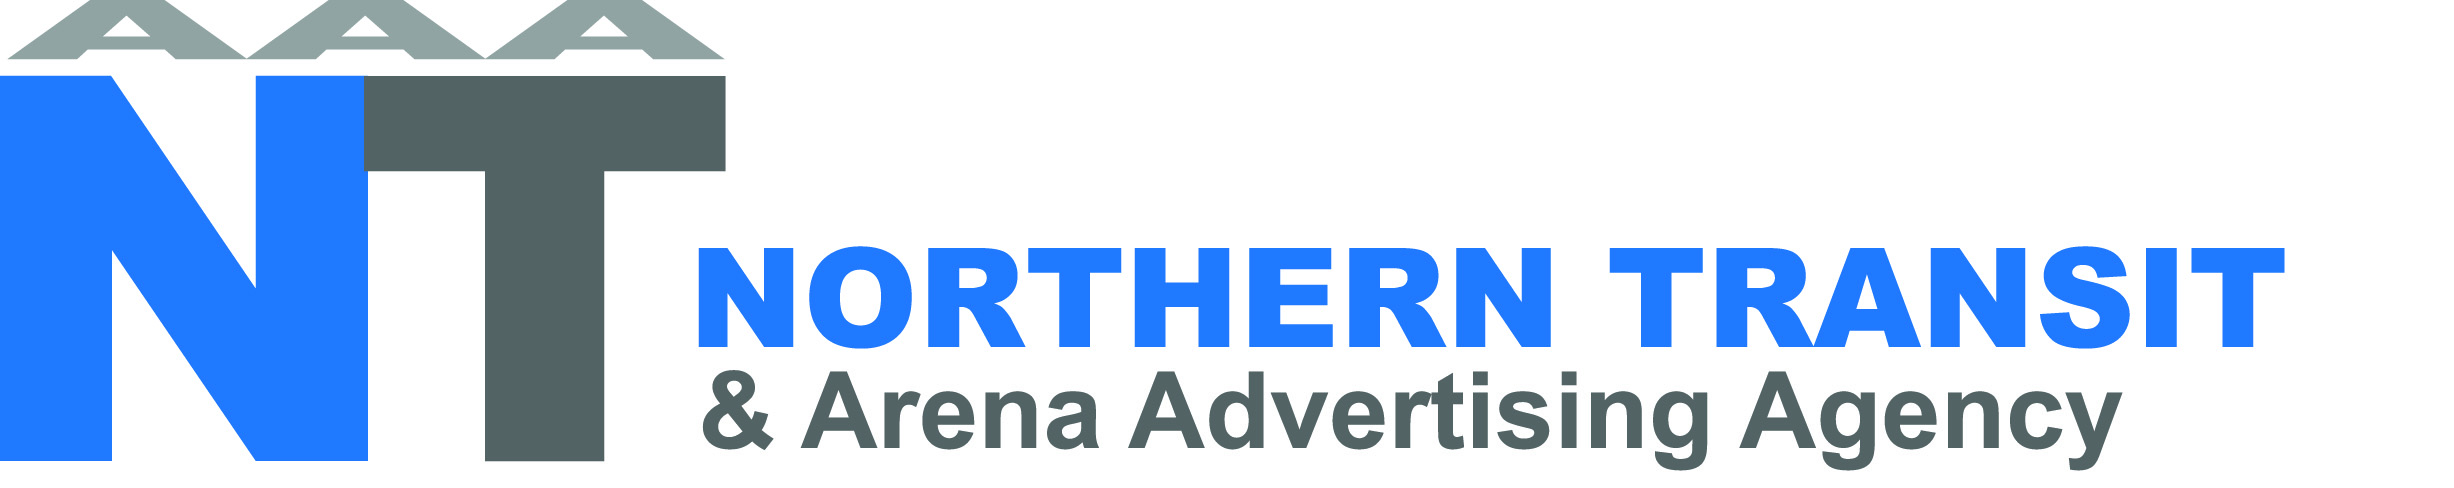 NTAAA logo